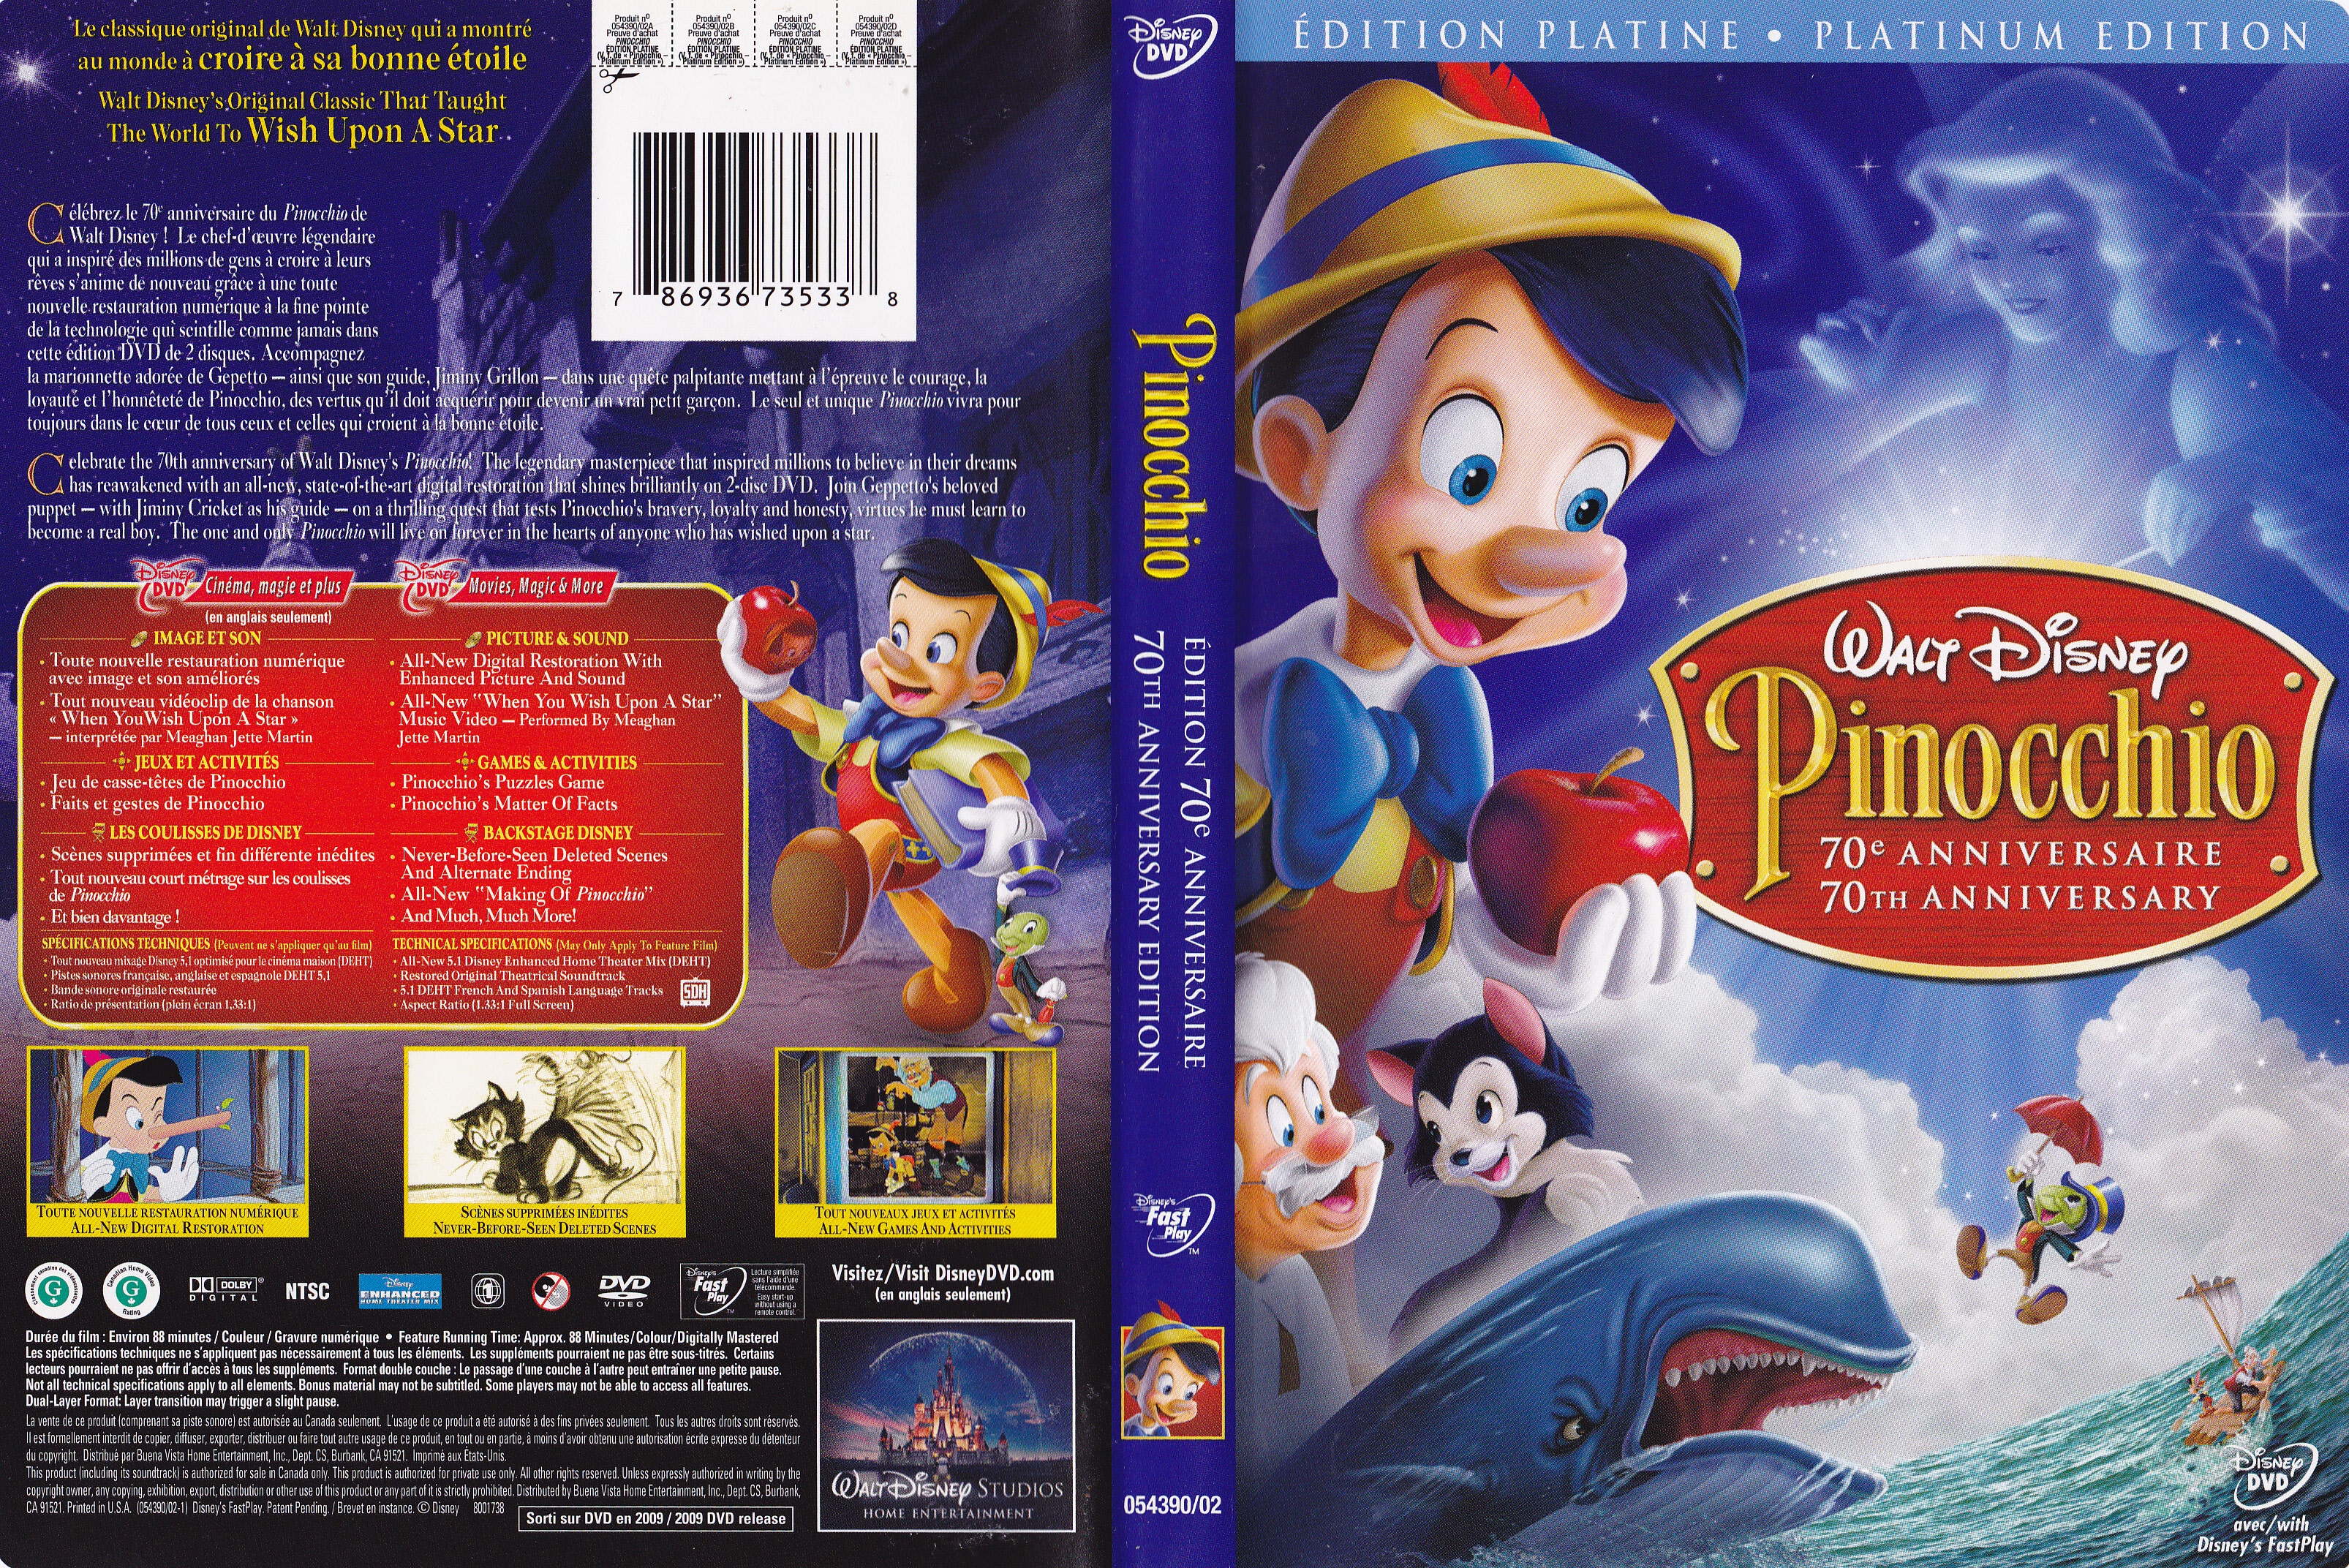 Jaquette DVD Pinocchio 70 ieme (Canadienne)